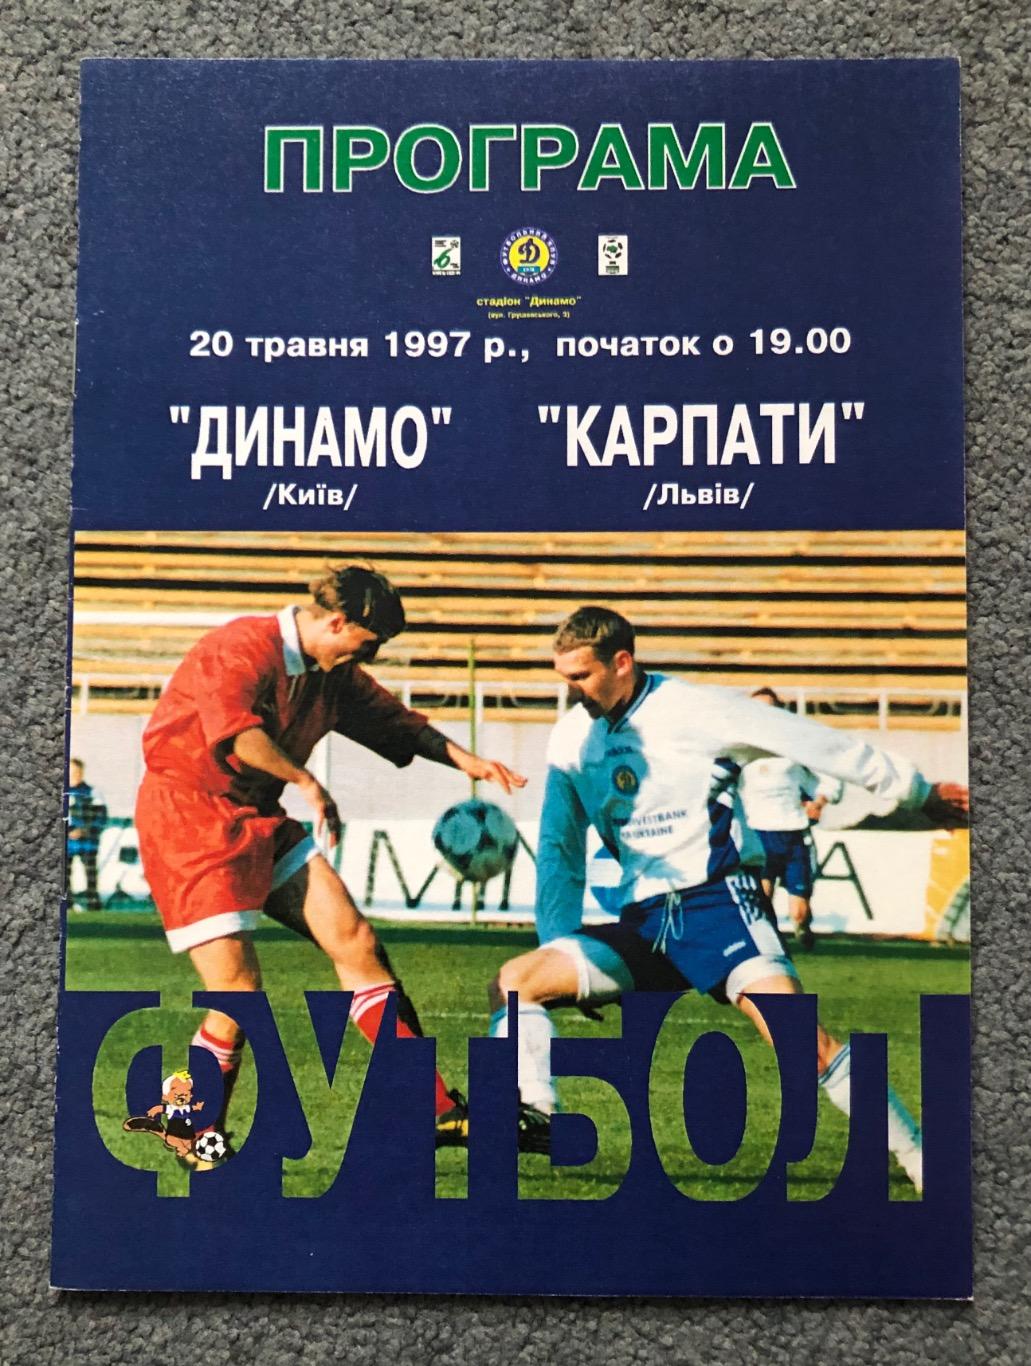 Динамо Киев - Карпаты Львов, 20.05.1997